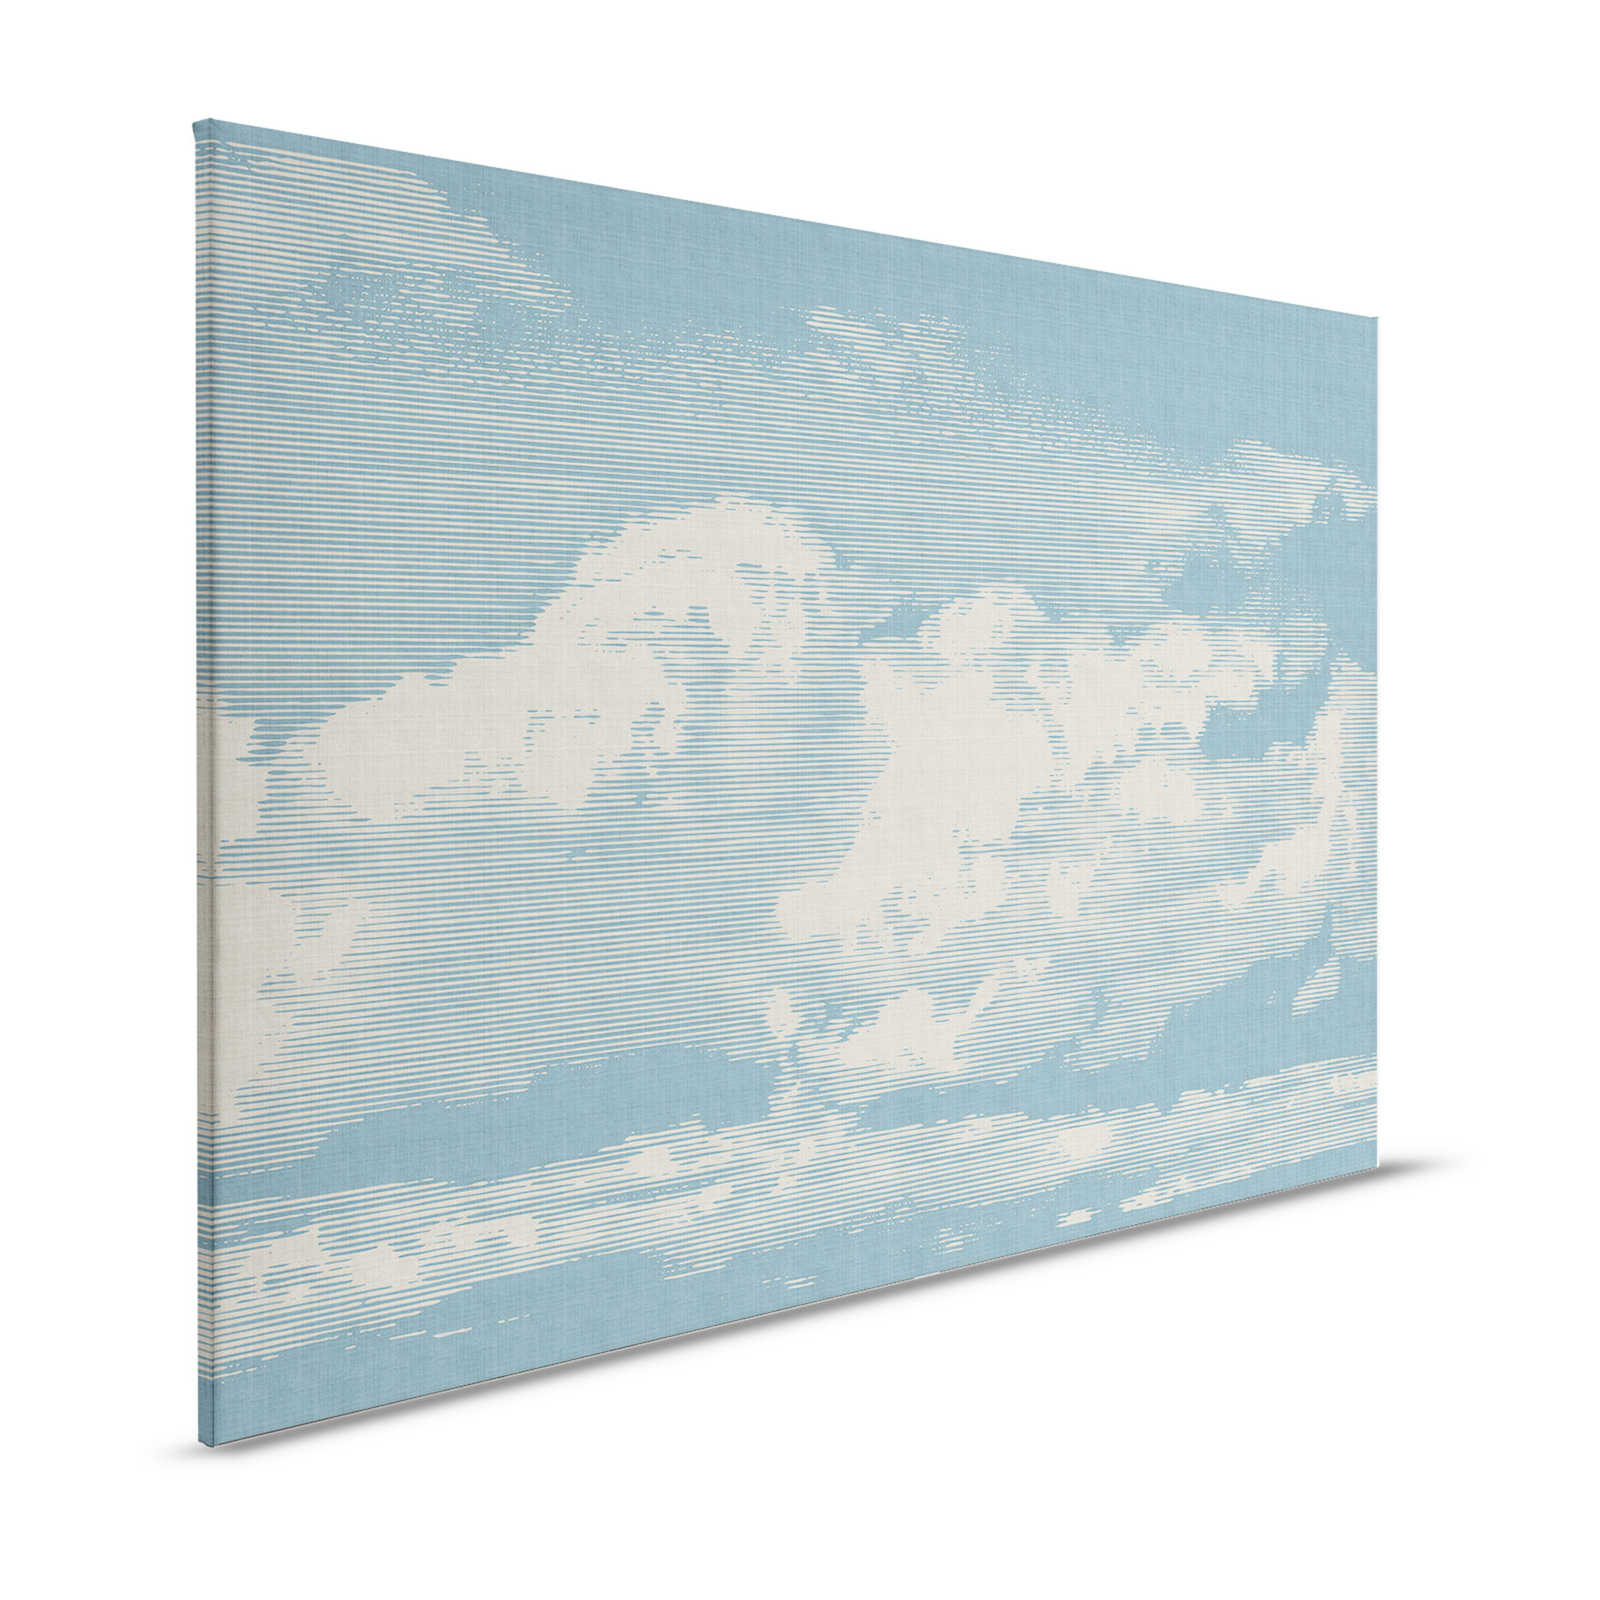         Clouds 1 - Himmlisches Leinwandbild mit Wolkenmotiv in naturleinen Optik – 1,20 m x 0,80 m
    